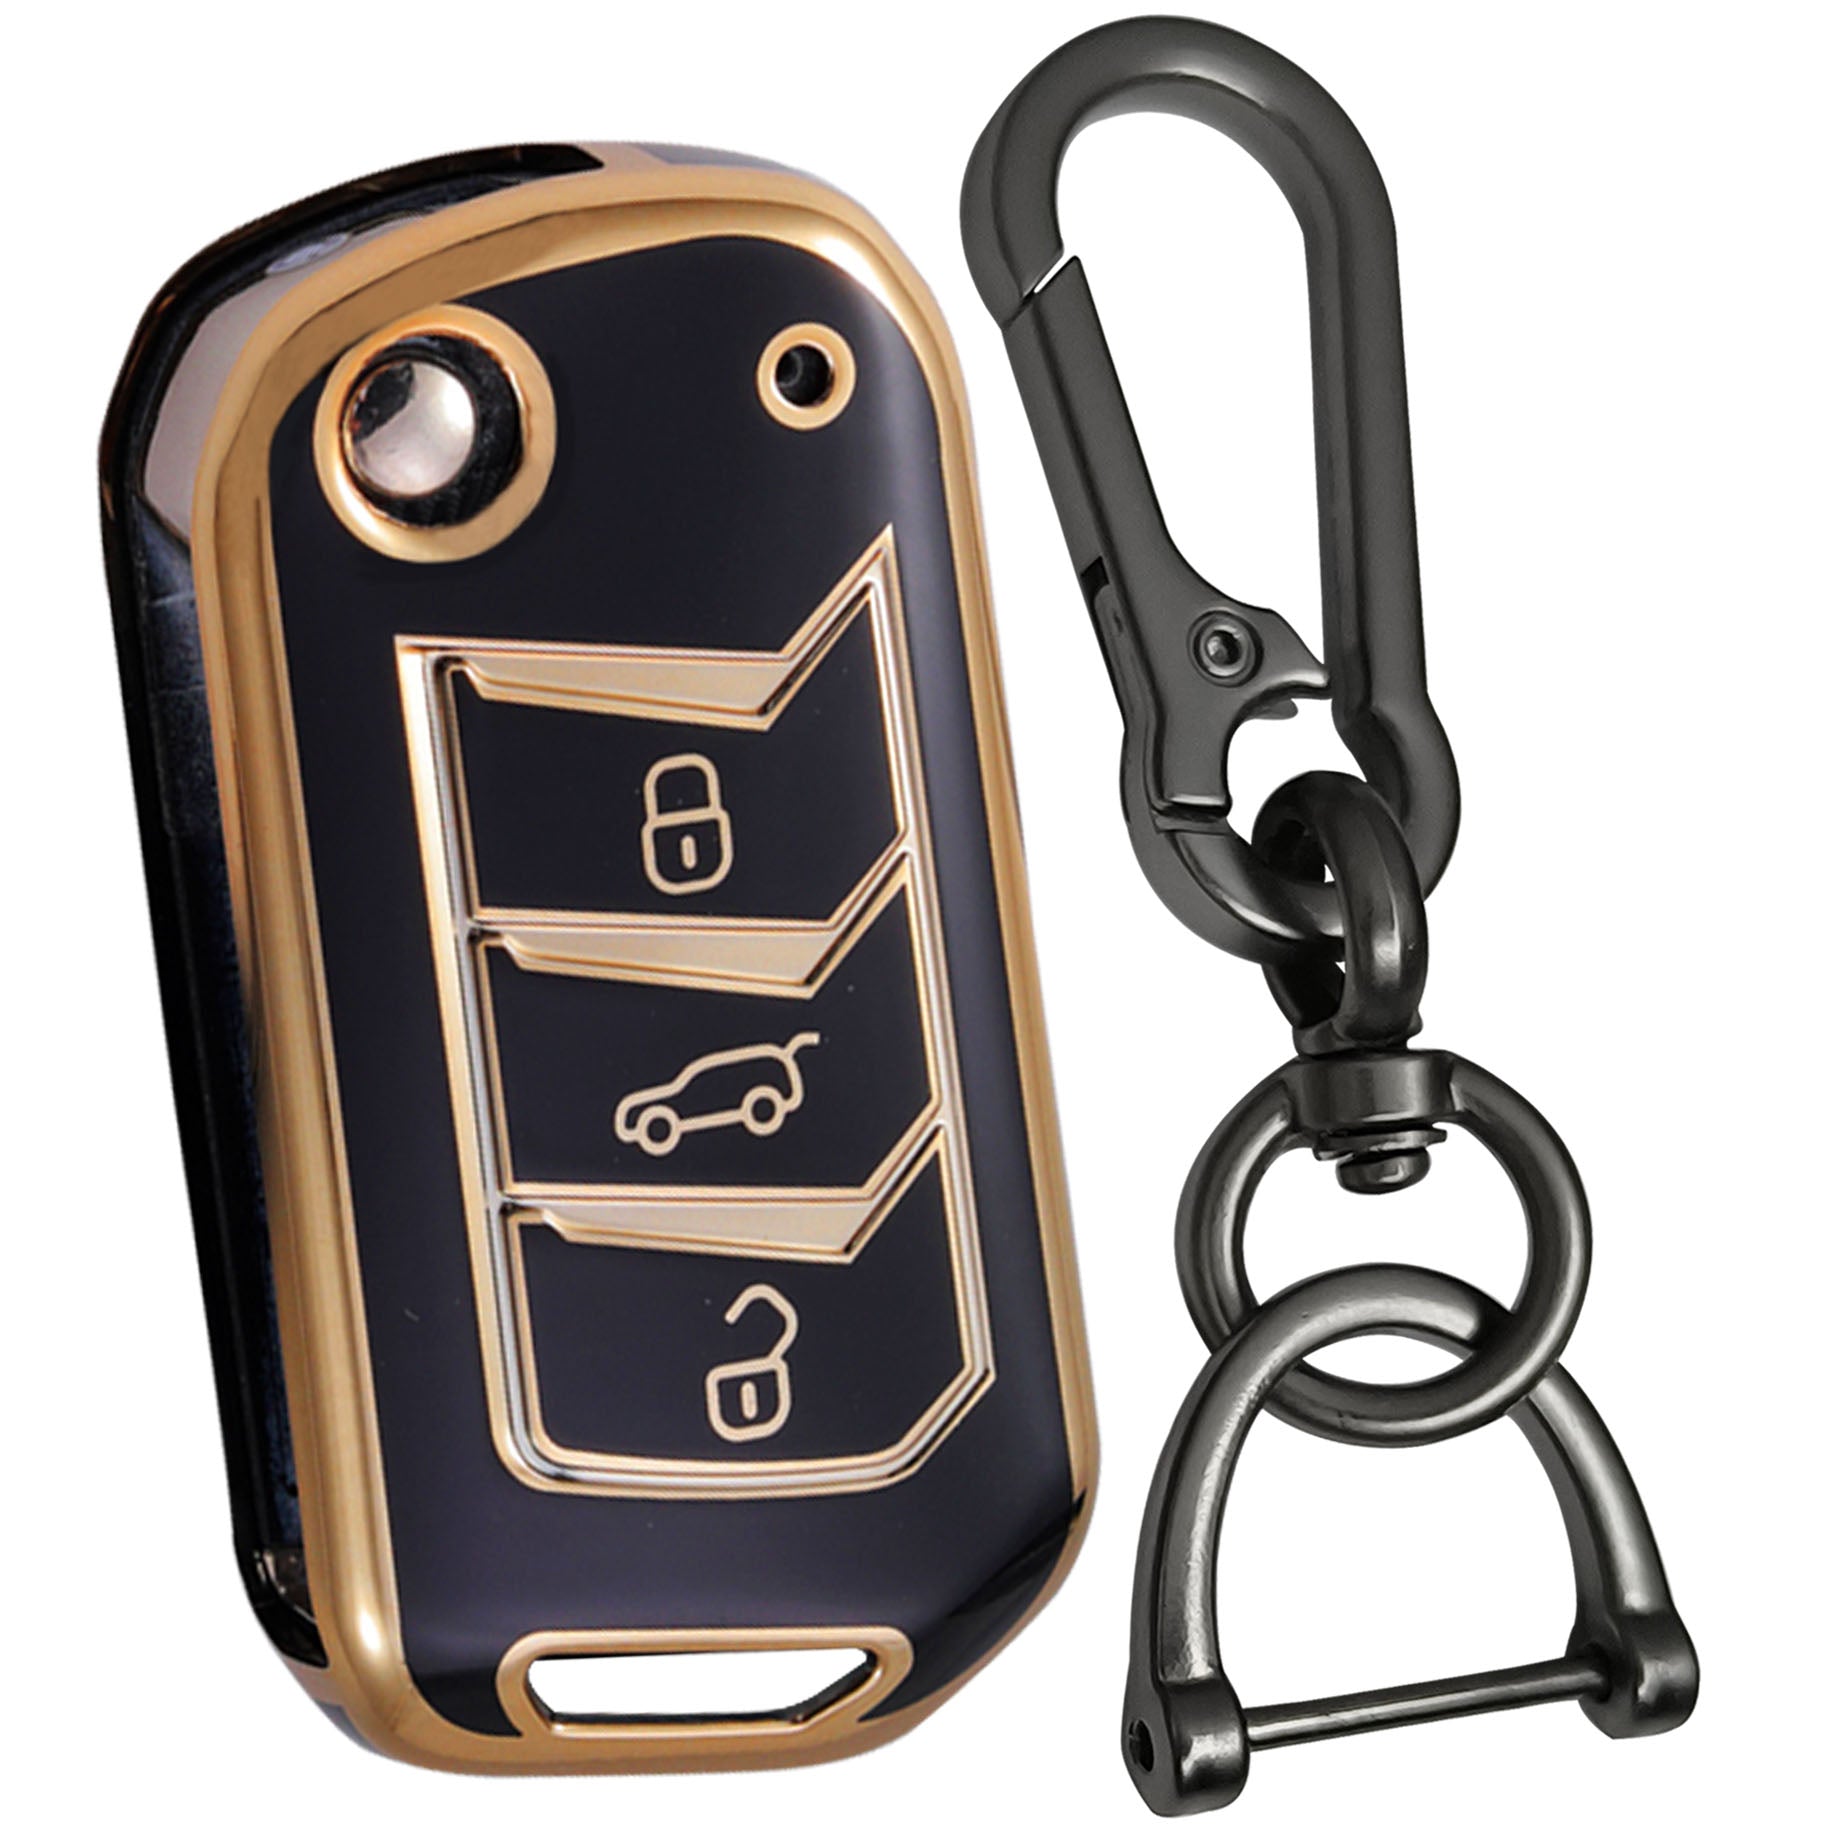 mahindra marazzo bolero xuv700 tpu black gold key cover case keychain 